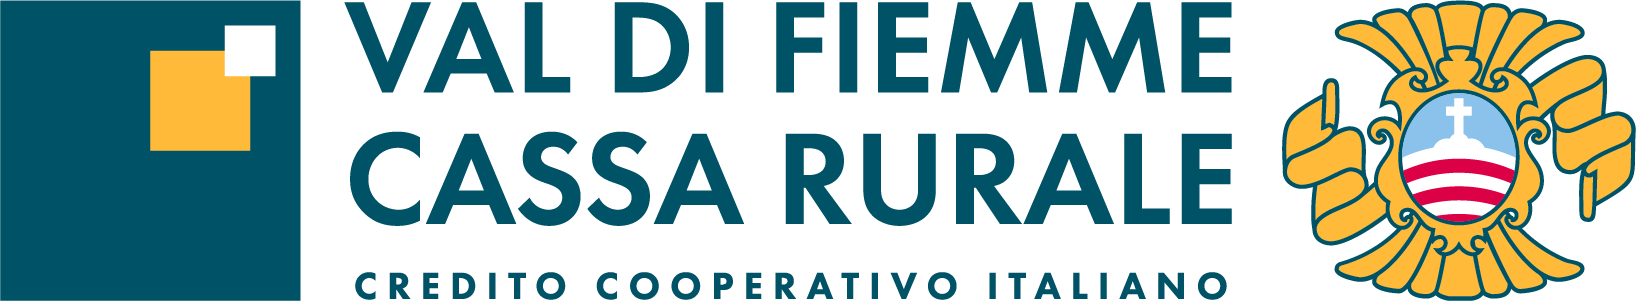 Logo Cassa Rurale Val di Fiemme